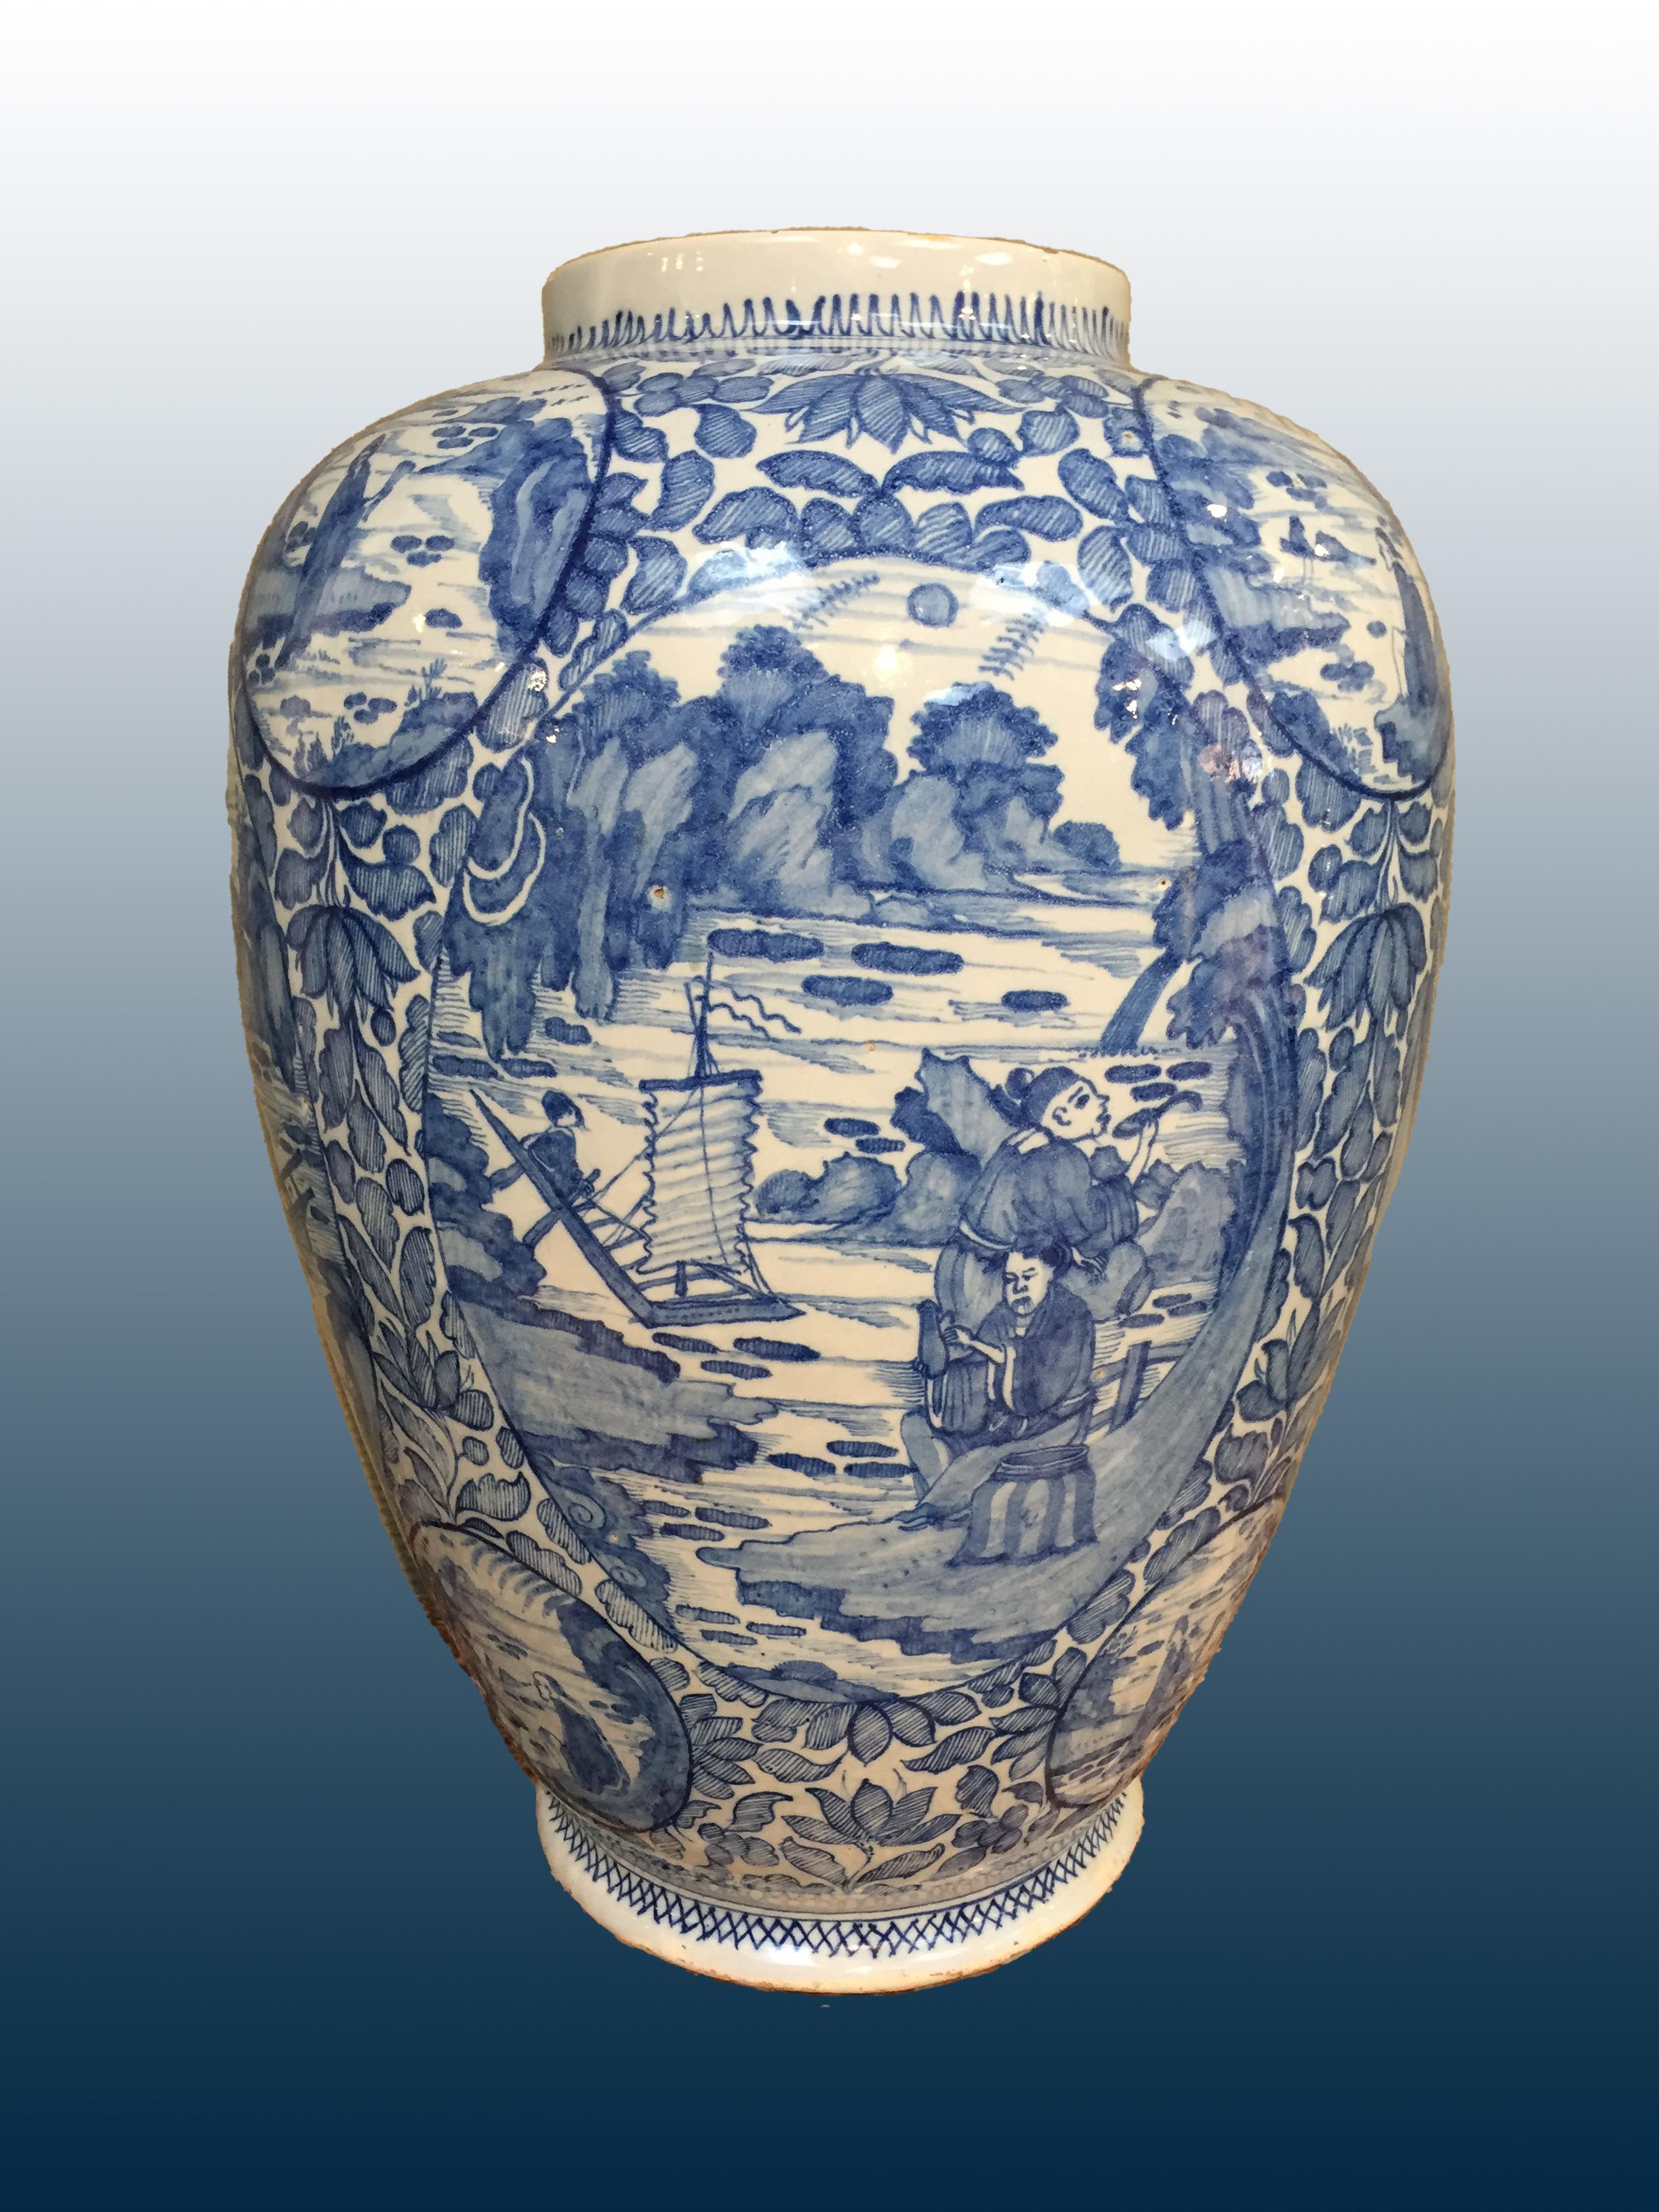 Eine seltene und sehr große, frühe niederländische Delfter Vase mit Chinoiserie-Dekor.

Ursprünglich: Delft, die Niederlande
Datum: 1724 - 1757
Workshop: De Metaale Pot unter der Leitung von Cornelis Koppens.
Gekennzeichnet mit CK für Cornelis